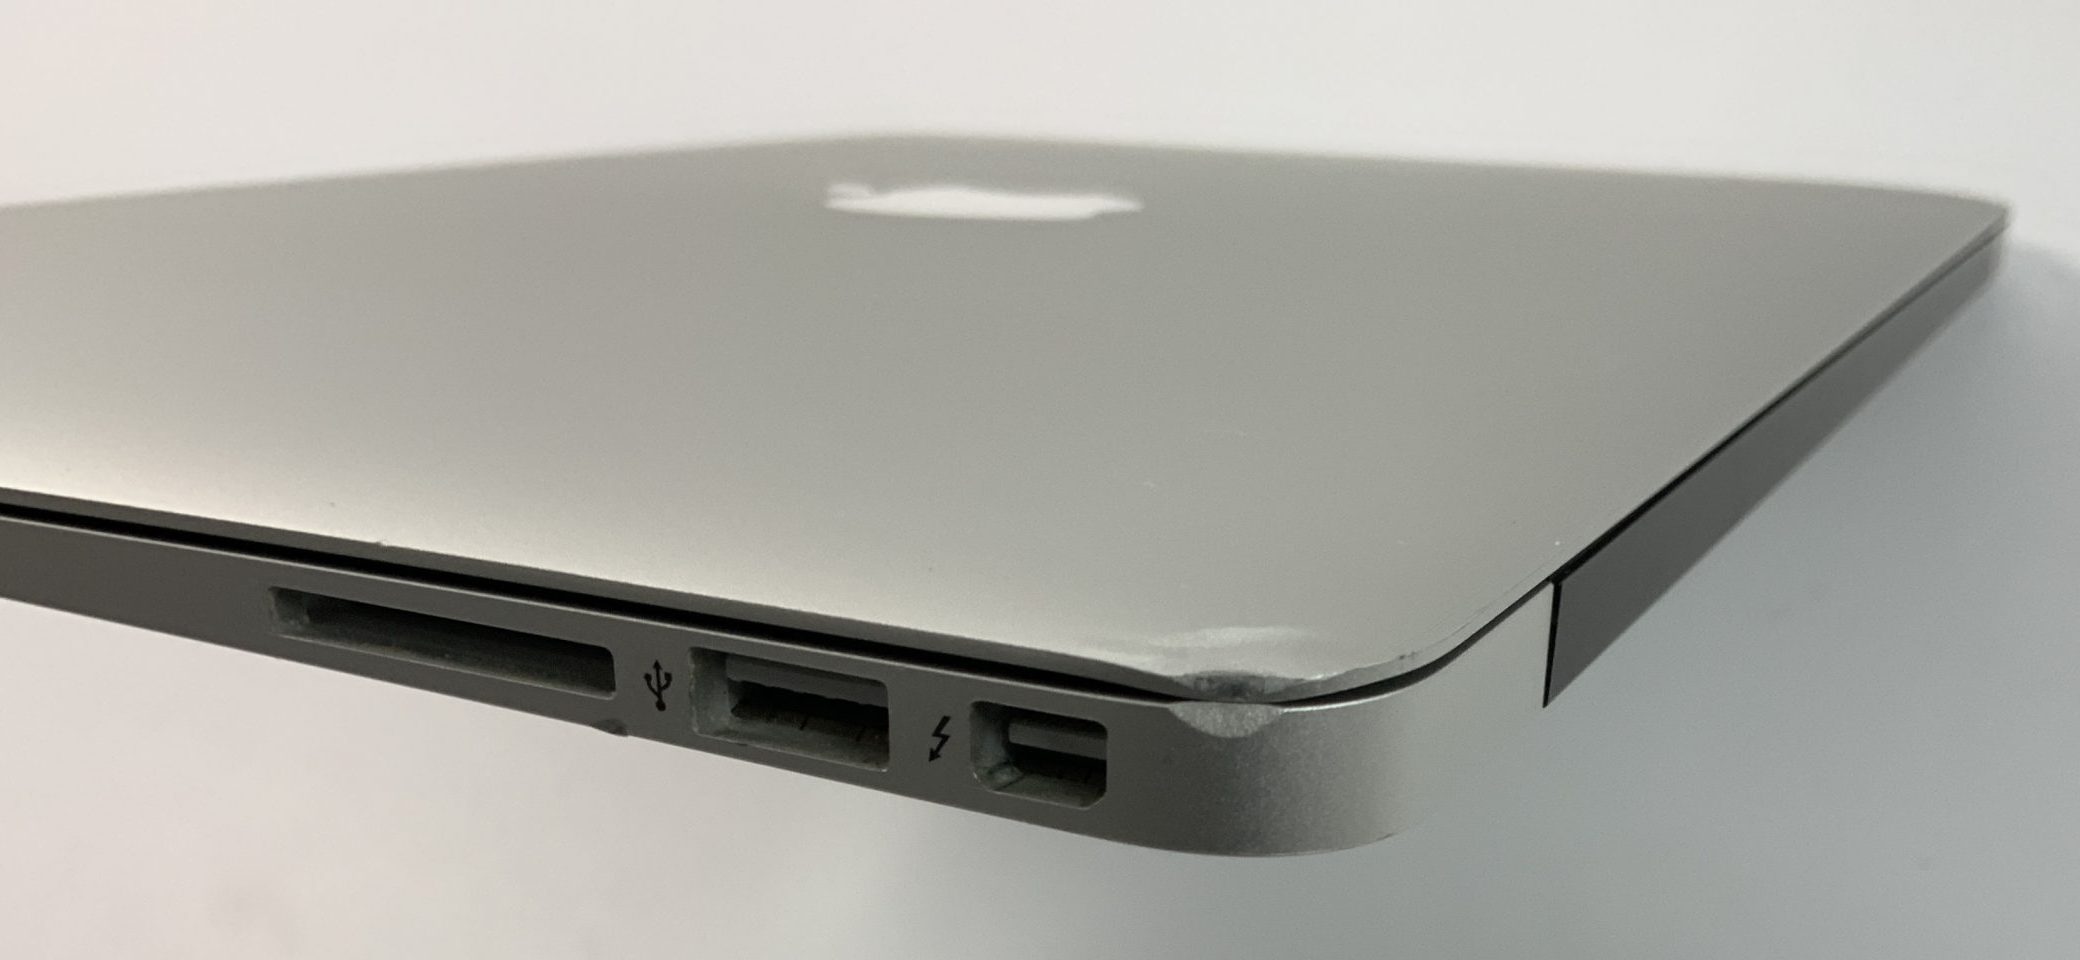 MacBook Air 13" Mid 2017 (Intel Core i5 1.8 GHz 8 GB RAM 256 GB SSD), Intel Core i5 1.8 GHz, 8 GB RAM, 256 GB SSD, immagine 5